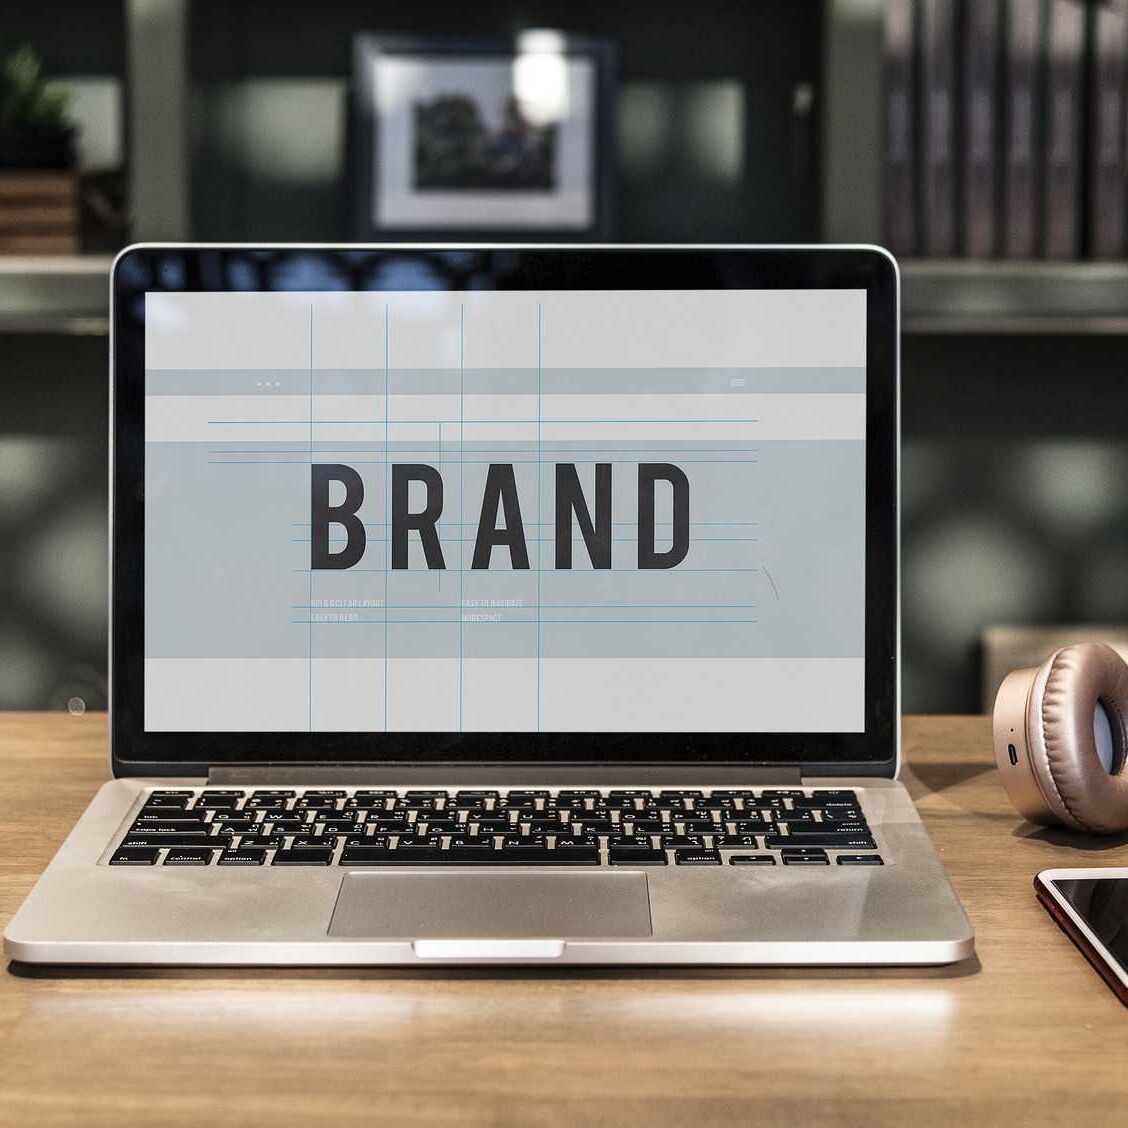 Il branding è un elemento fondamentale del posizionamento di un'azienda